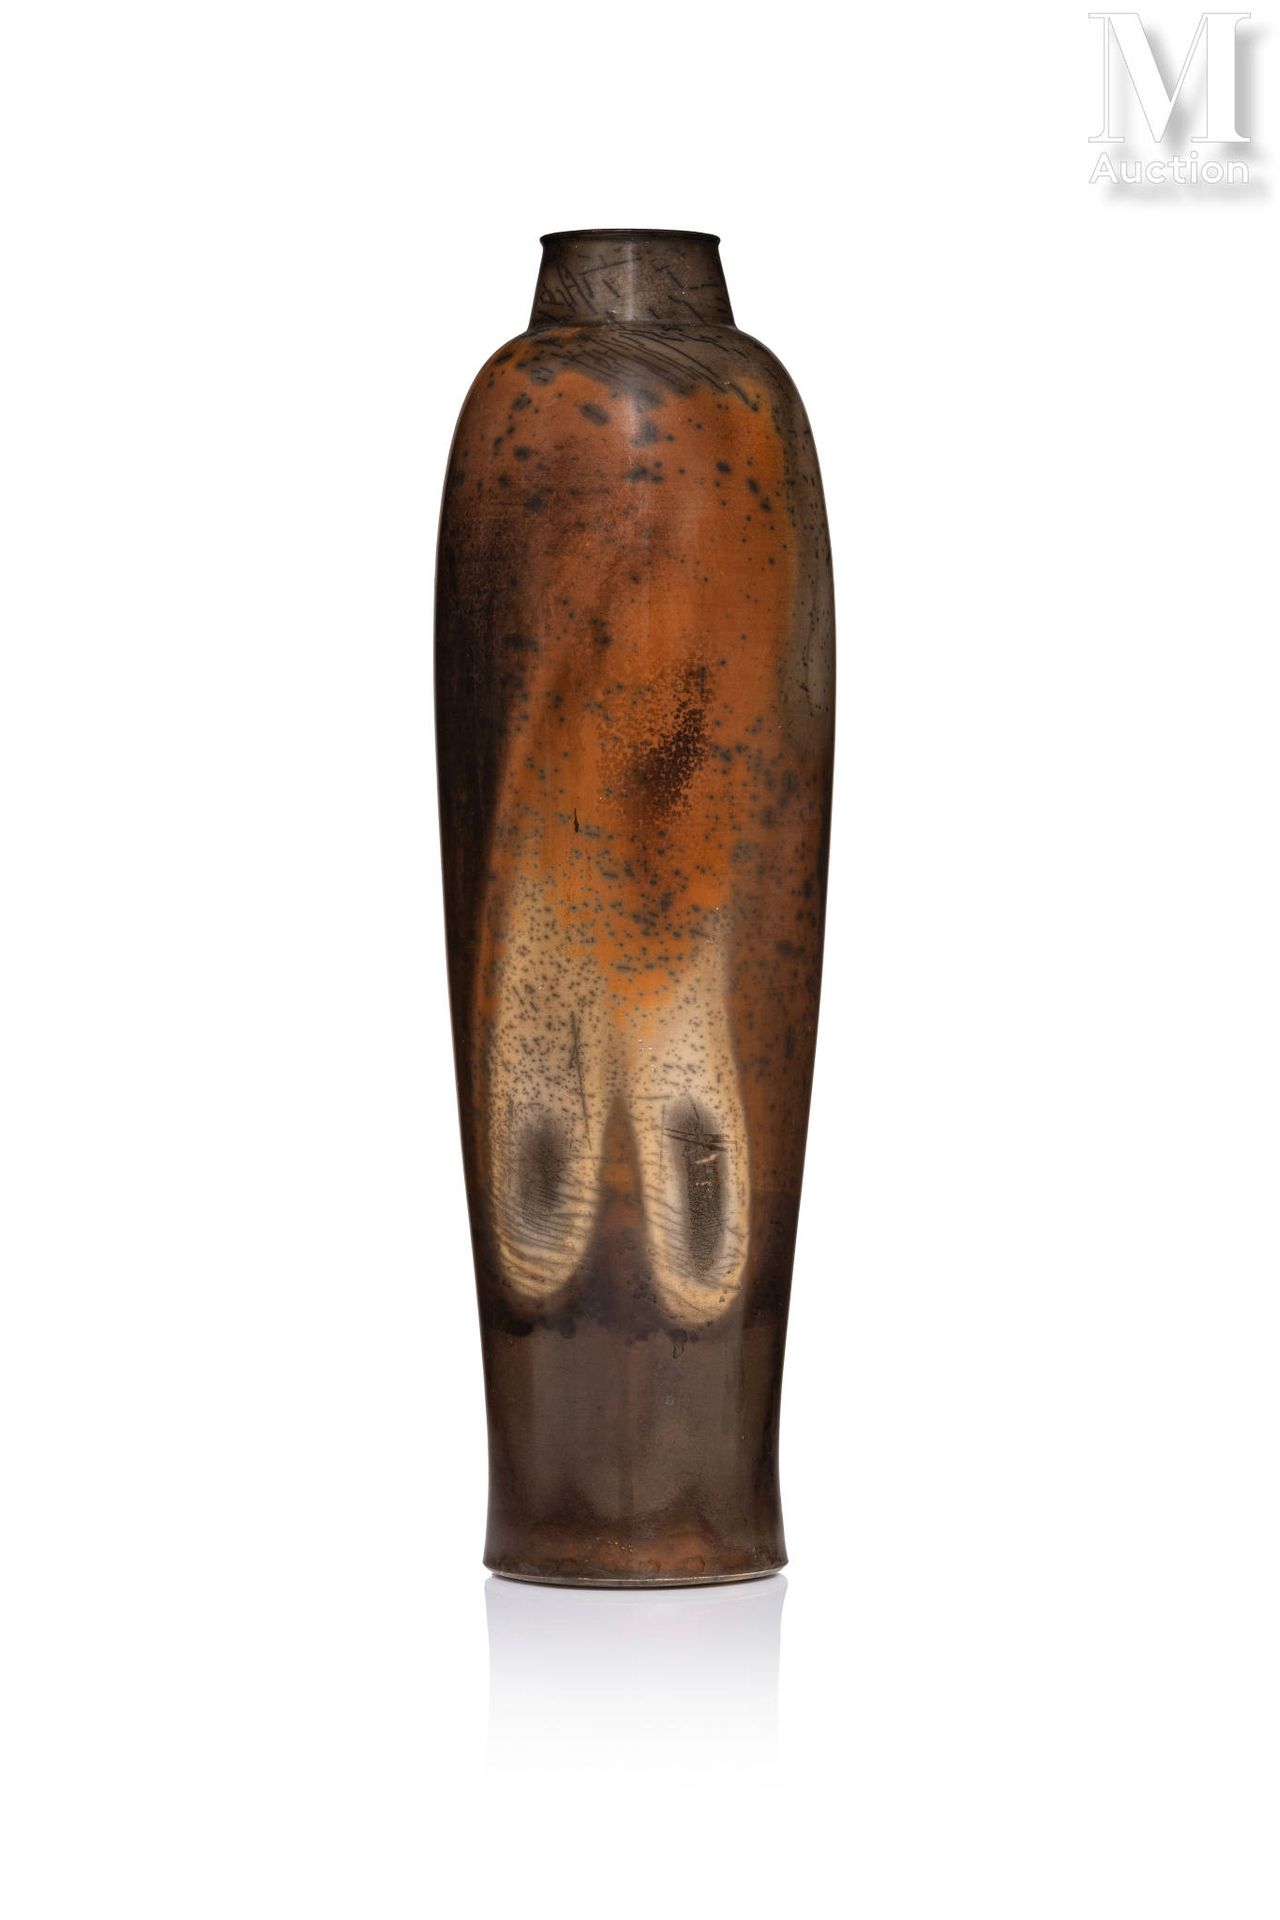 Pierre BAYLE (1945 - 2004) Vase ovoïde à col resserré en terre sigillée, engobée&hellip;